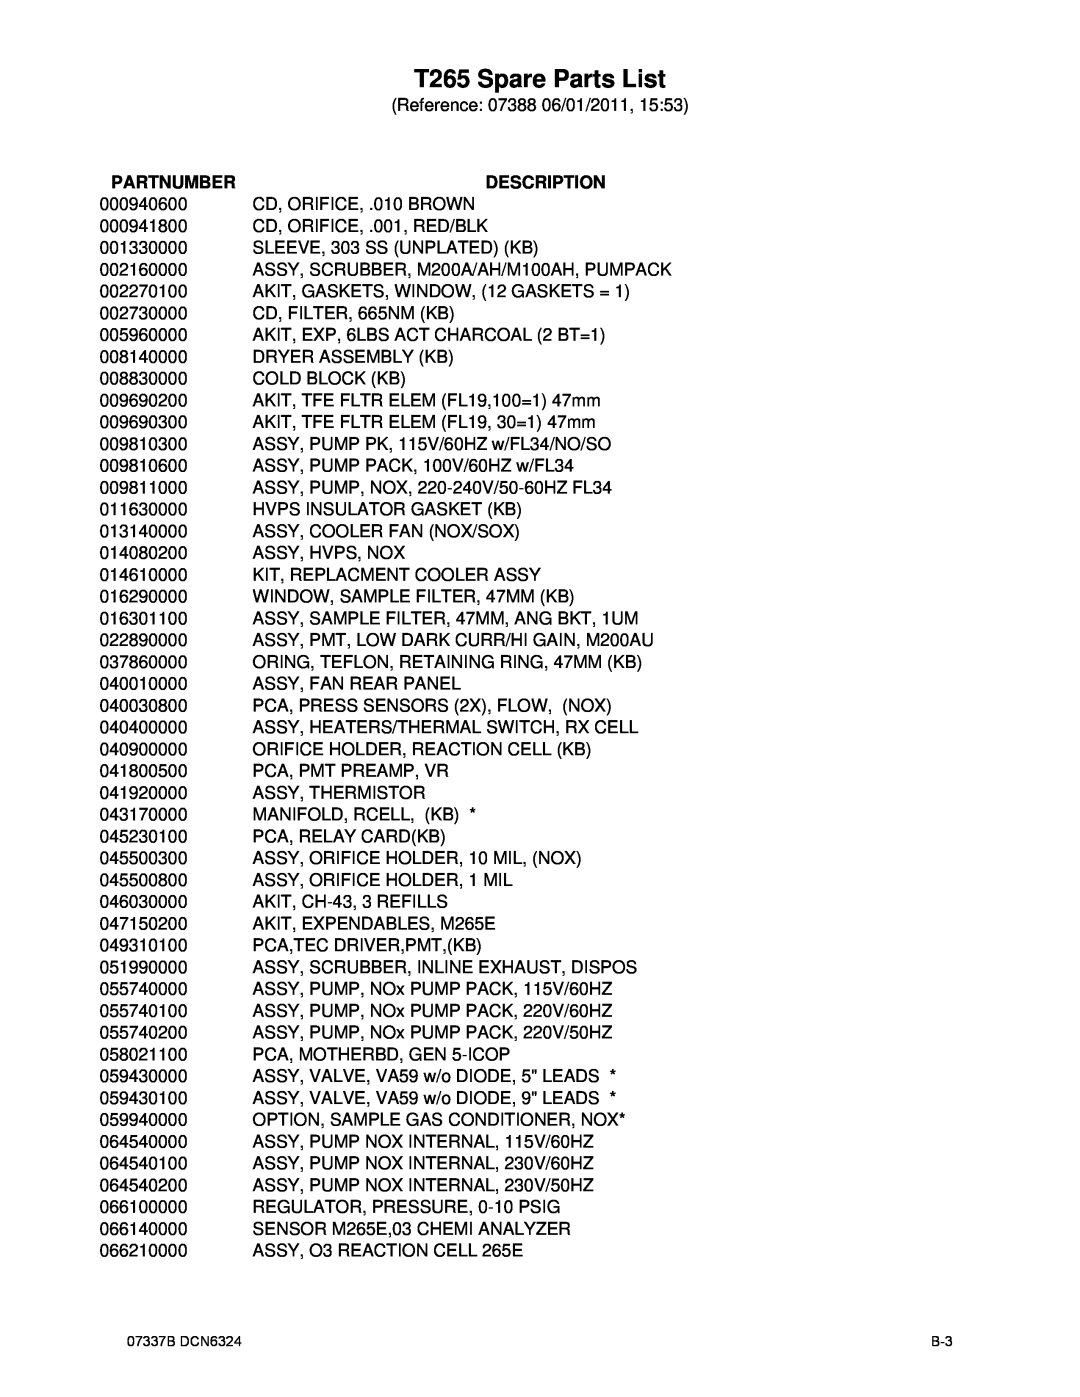 Teledyne manual T265 Spare Parts List, Partnumber, Description 